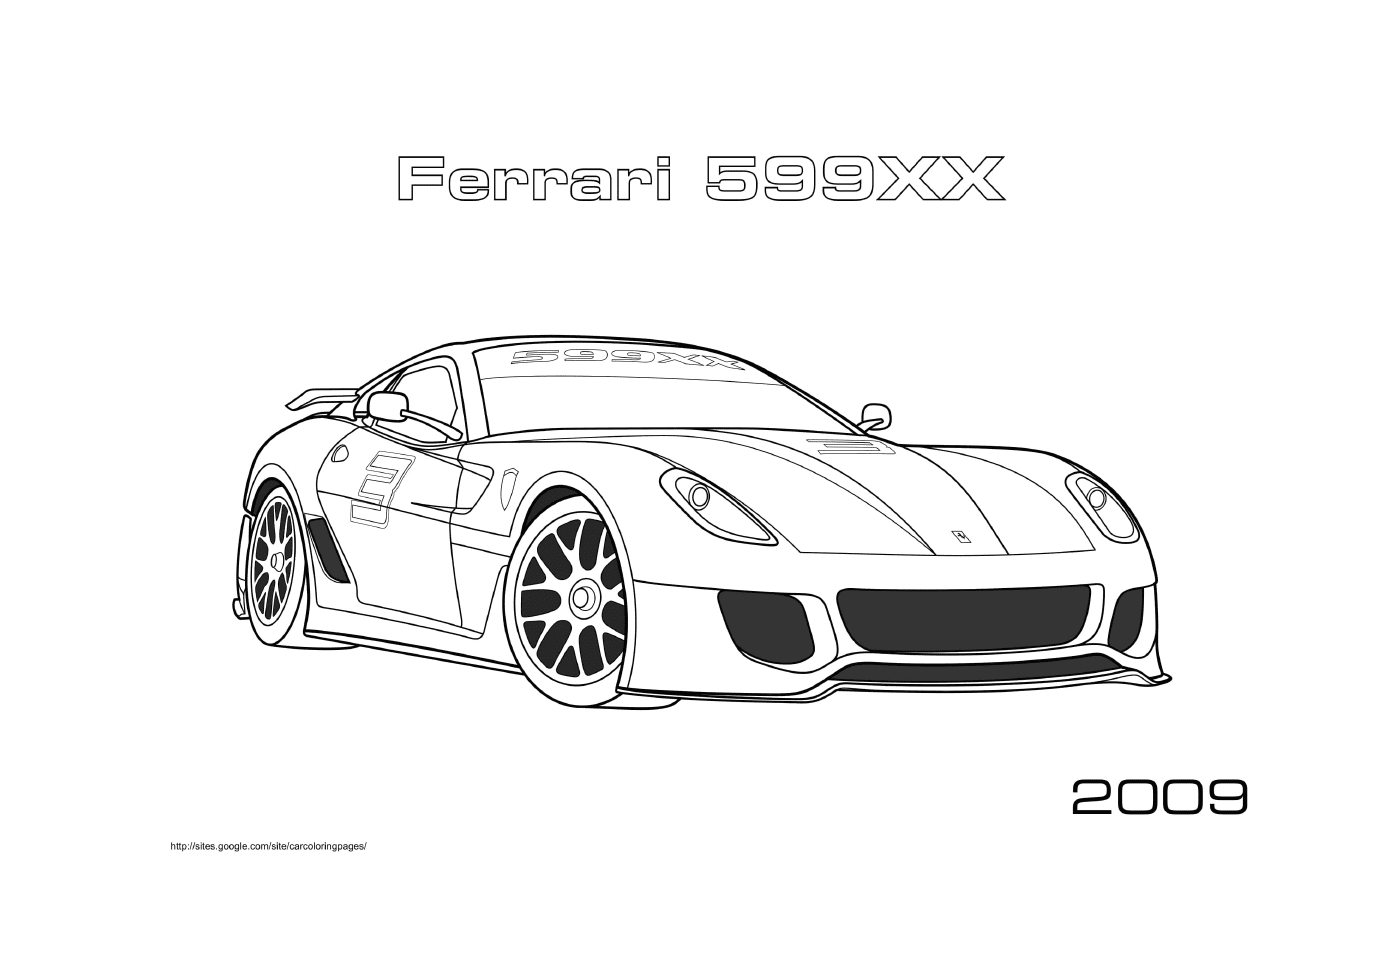 Ferrari 599xx 2009